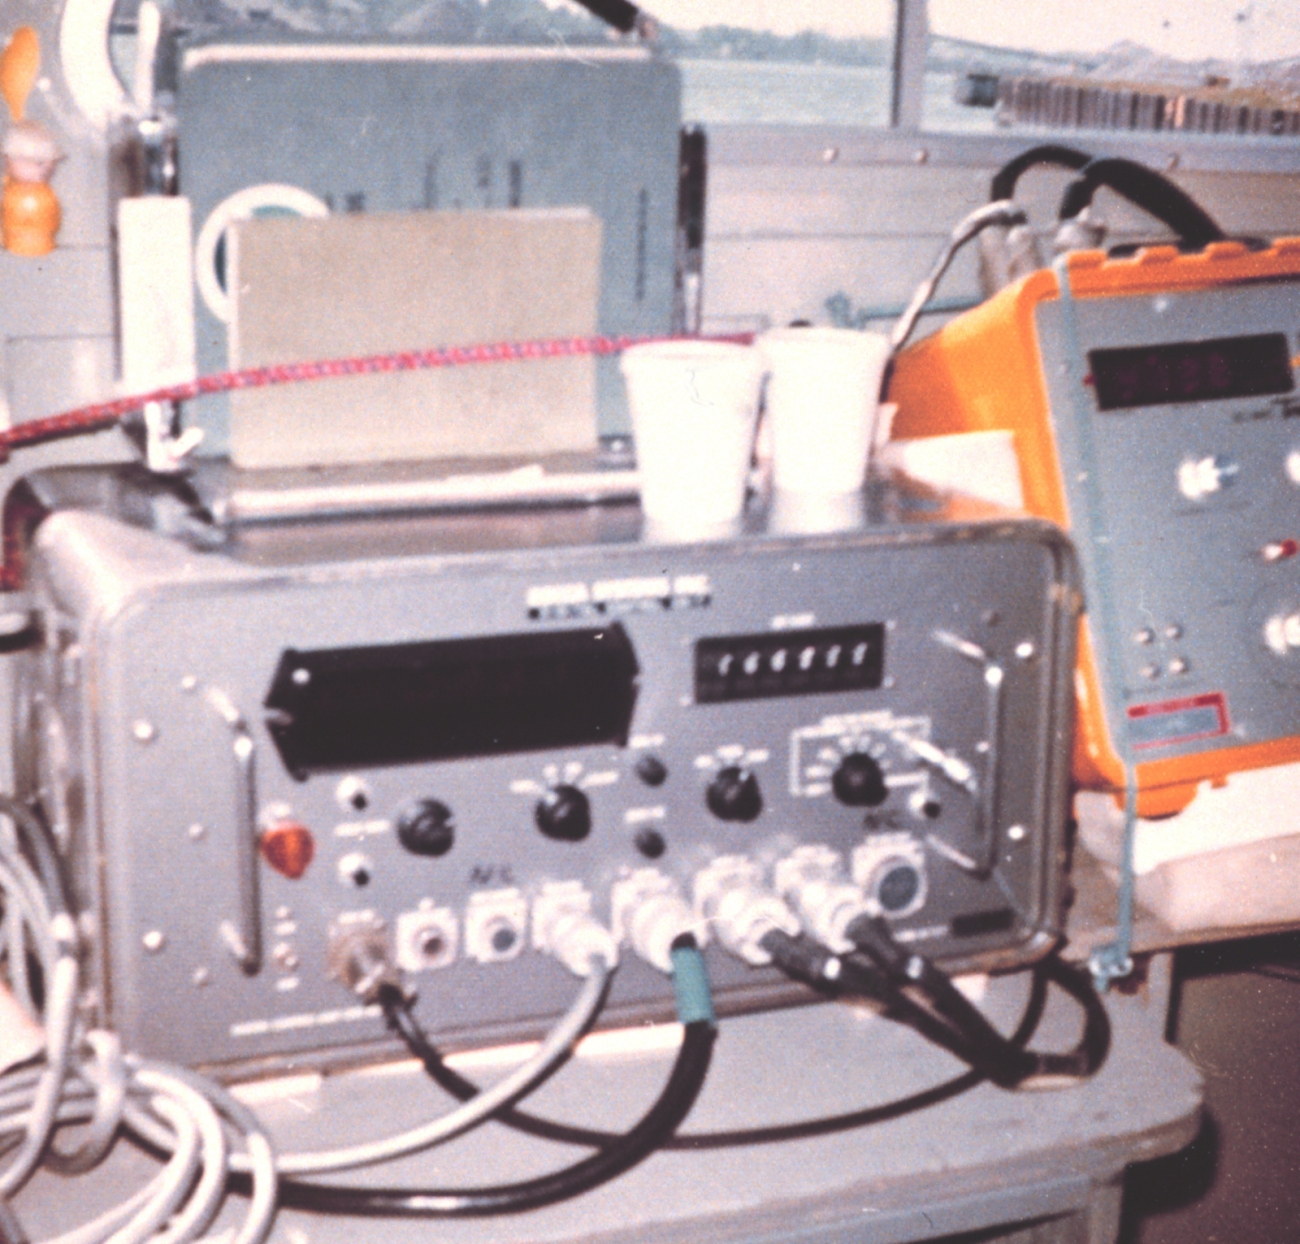 Electronics on inshore survey boat